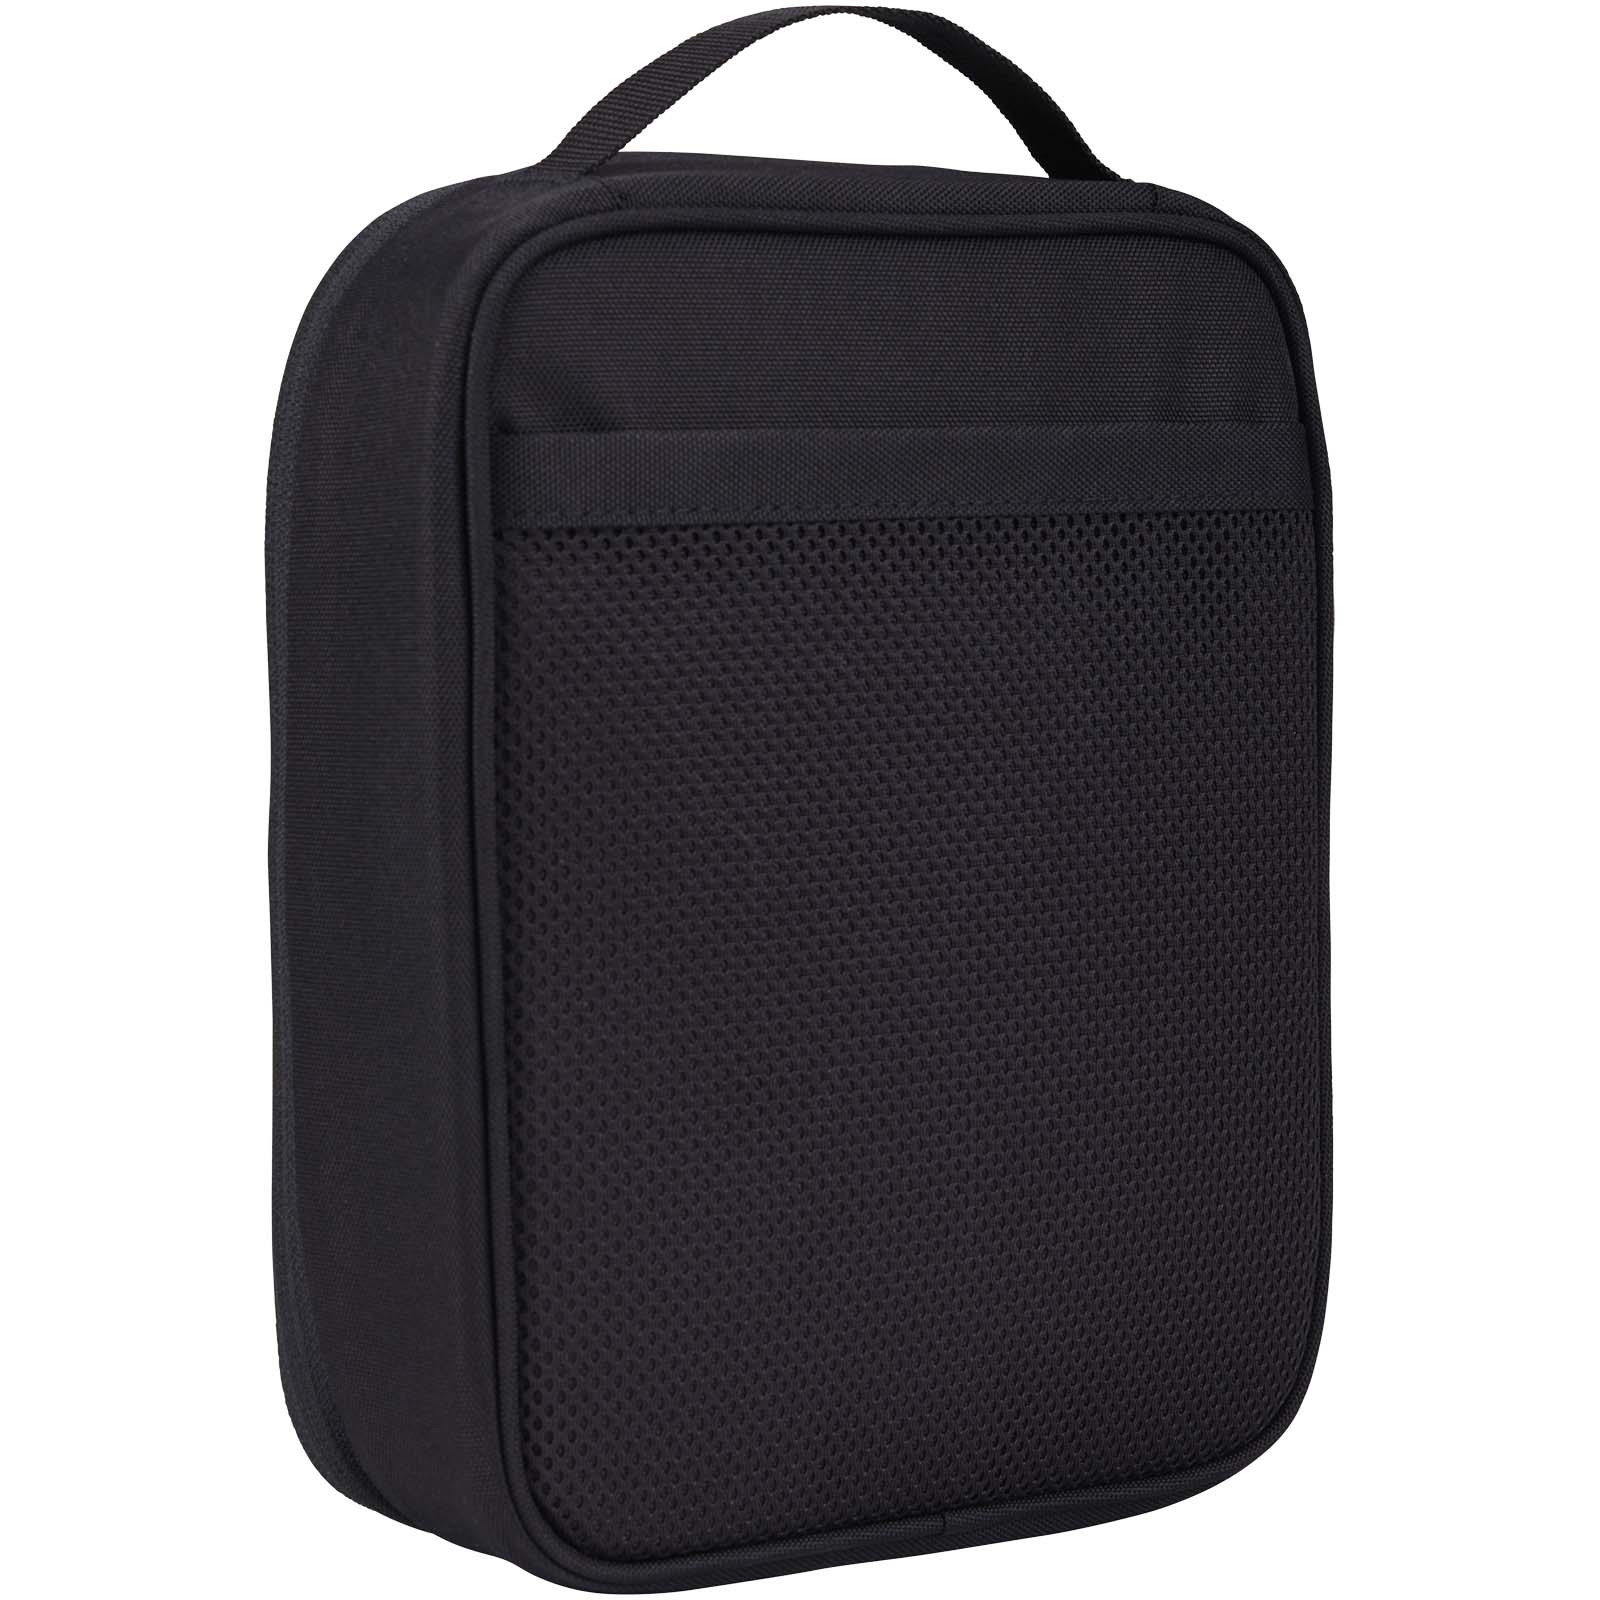 Advertising Travel Accessories - Case Logic Invigo accessories bag - 2